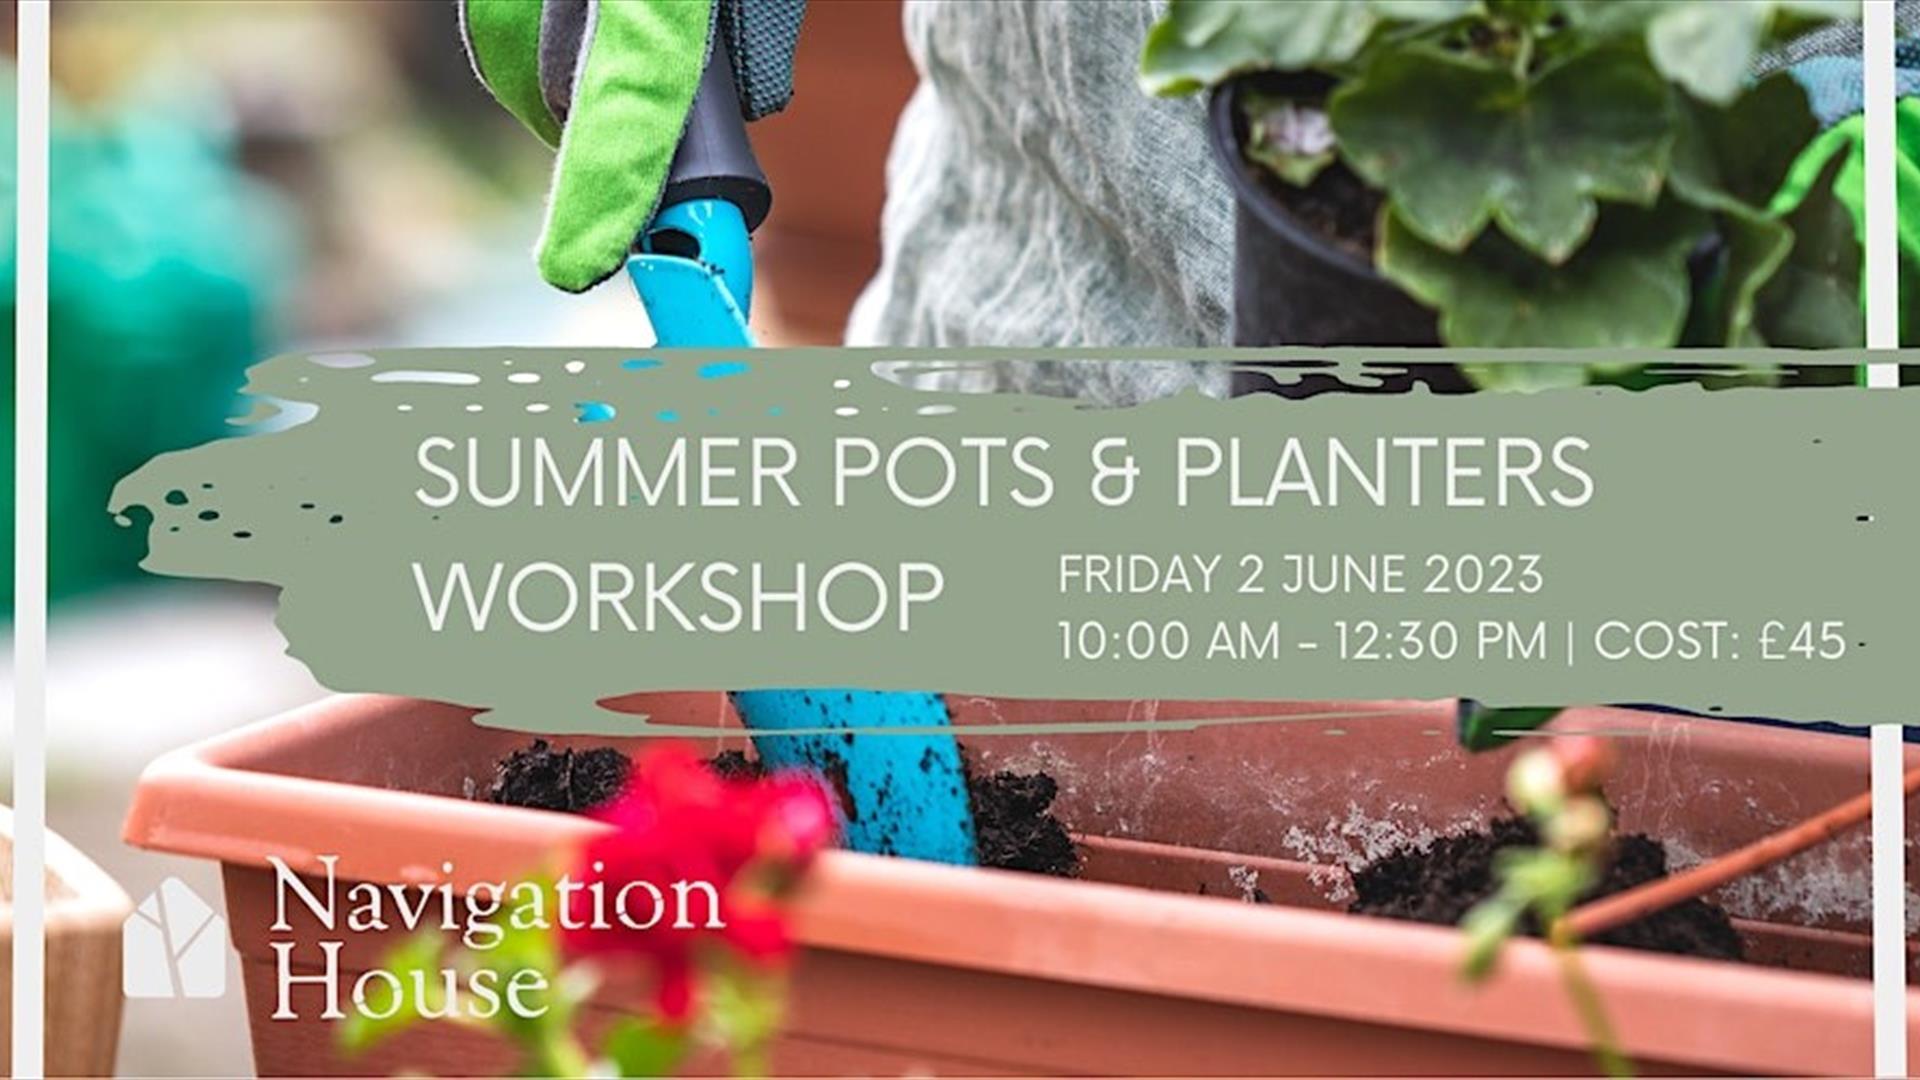 Sign for Summer Pots & Planters Workshop inside planter